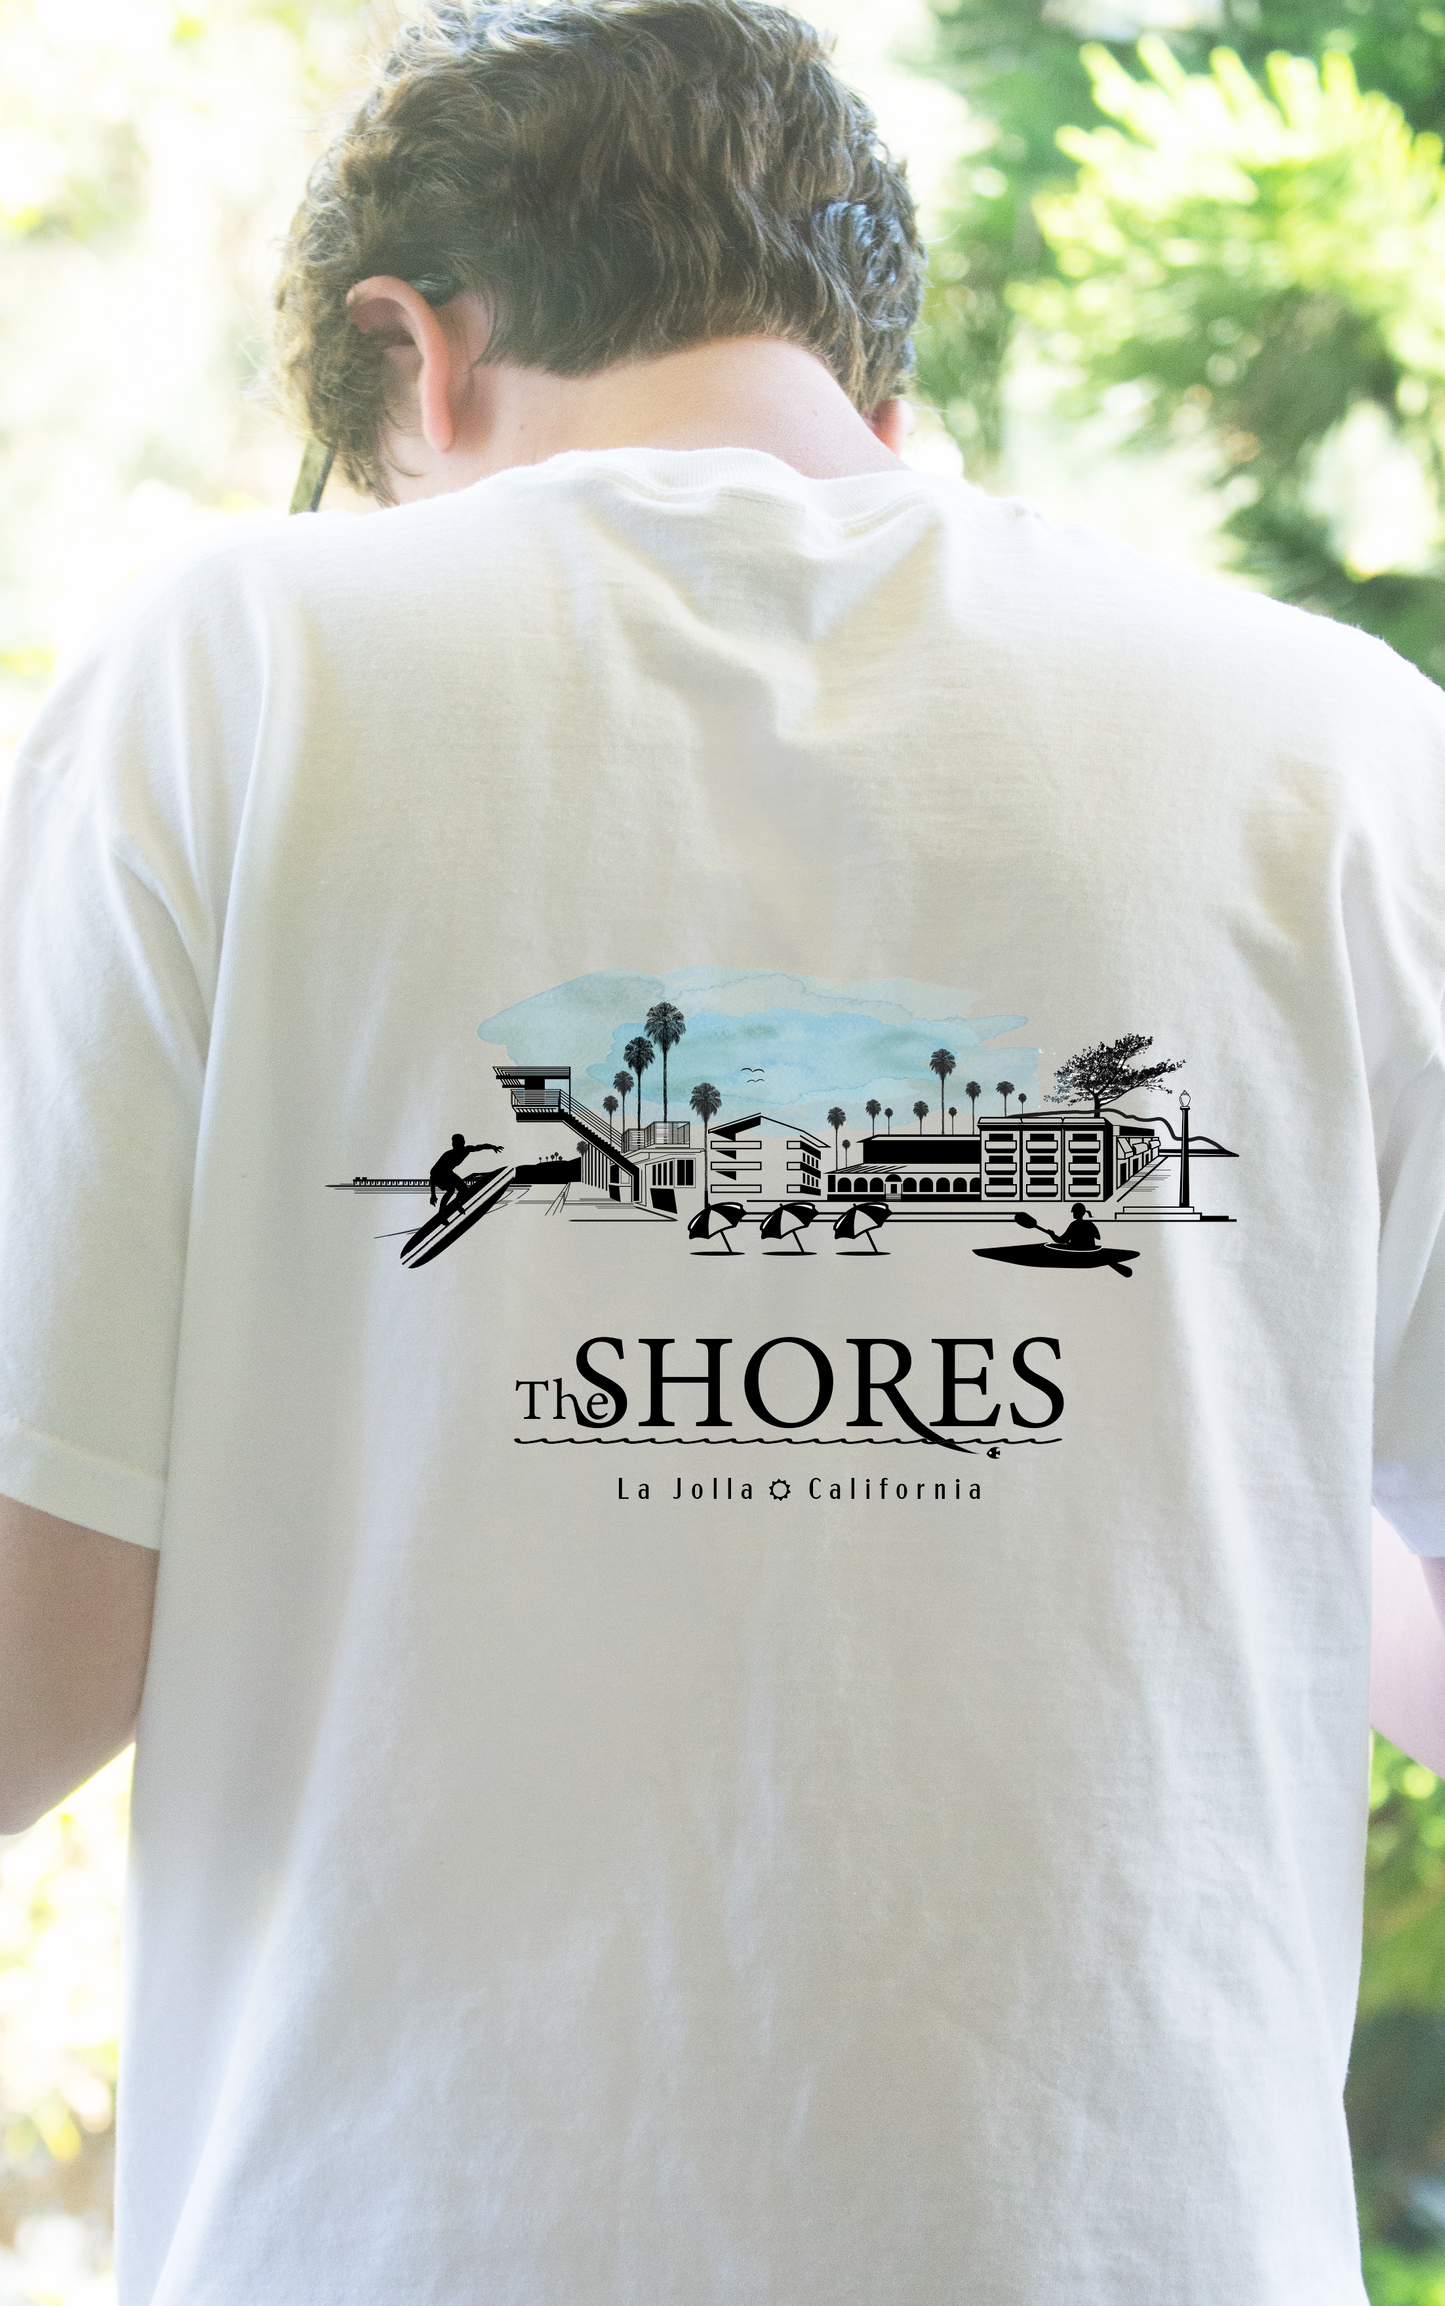 La Jolla Shores Town T-shirt